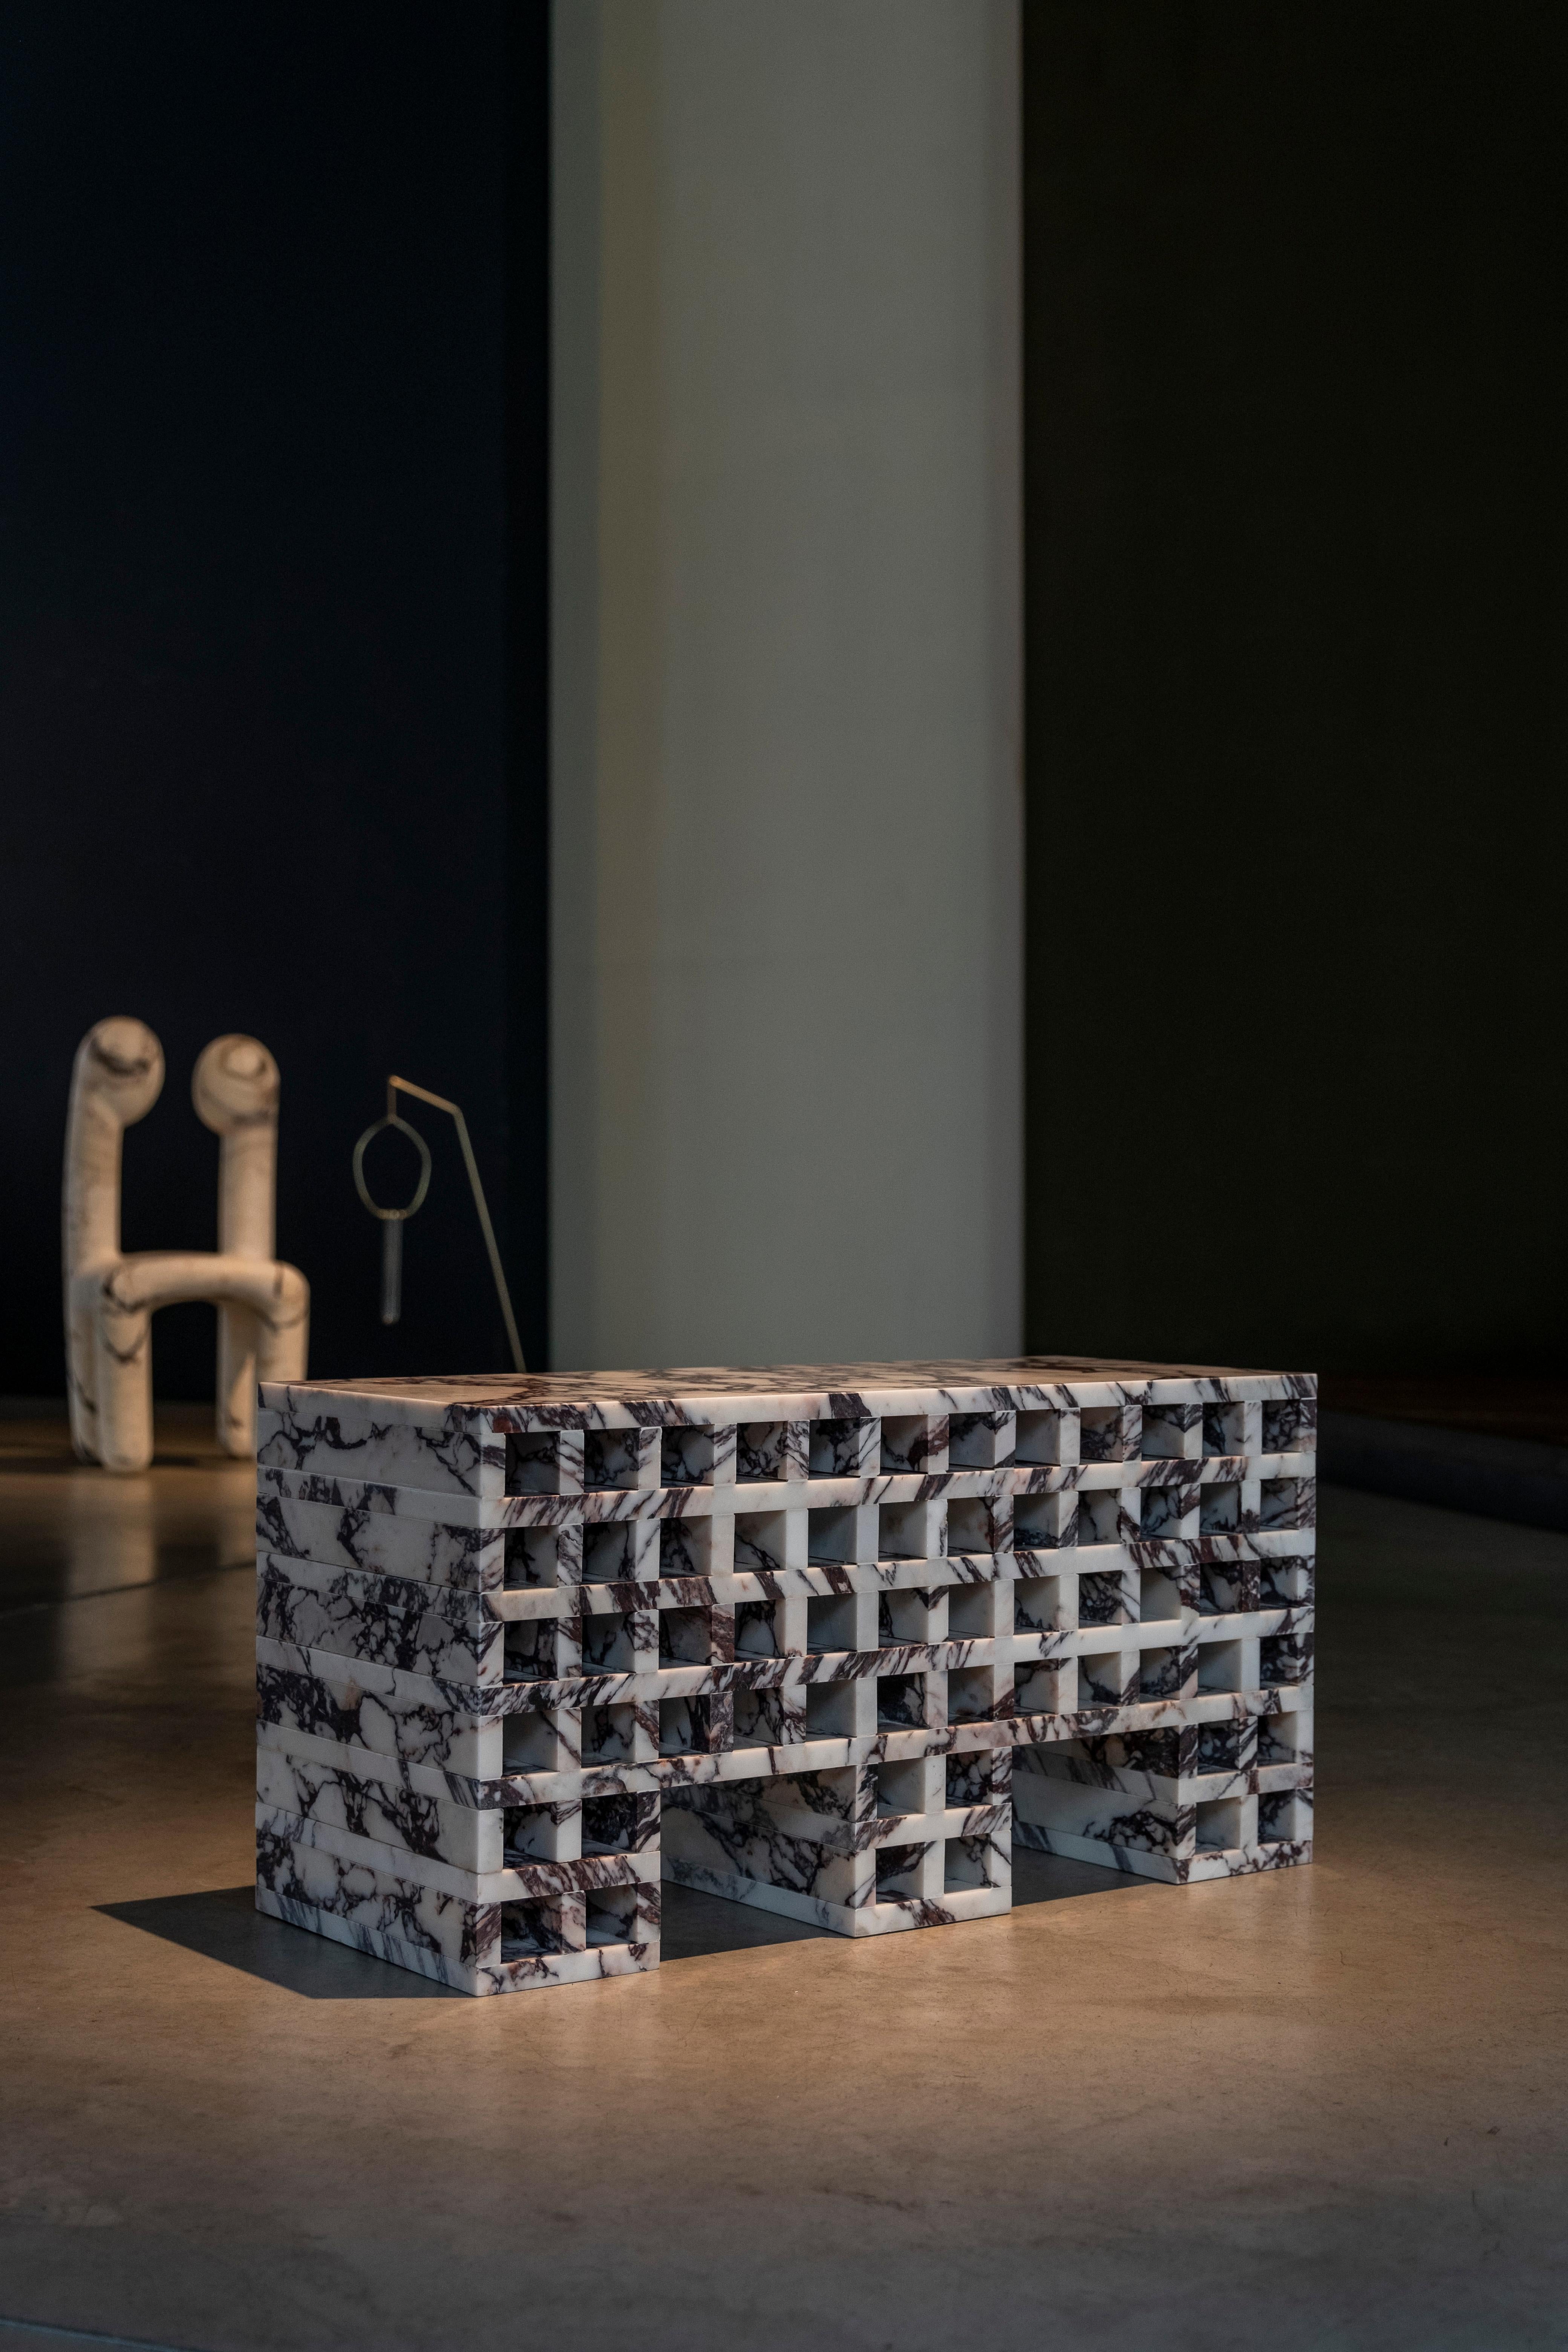 Table d'appoint d'archives par Cara Davide
MATERIAL : ALTO CALACATTA
Dimensions : H 38 x L 30 x P 74CM
2021

Archivio est une petite table d'appoint fabriquée à partir d'une seule feuille de marbre Calacatta Viola archivé.
Le projet a été développé